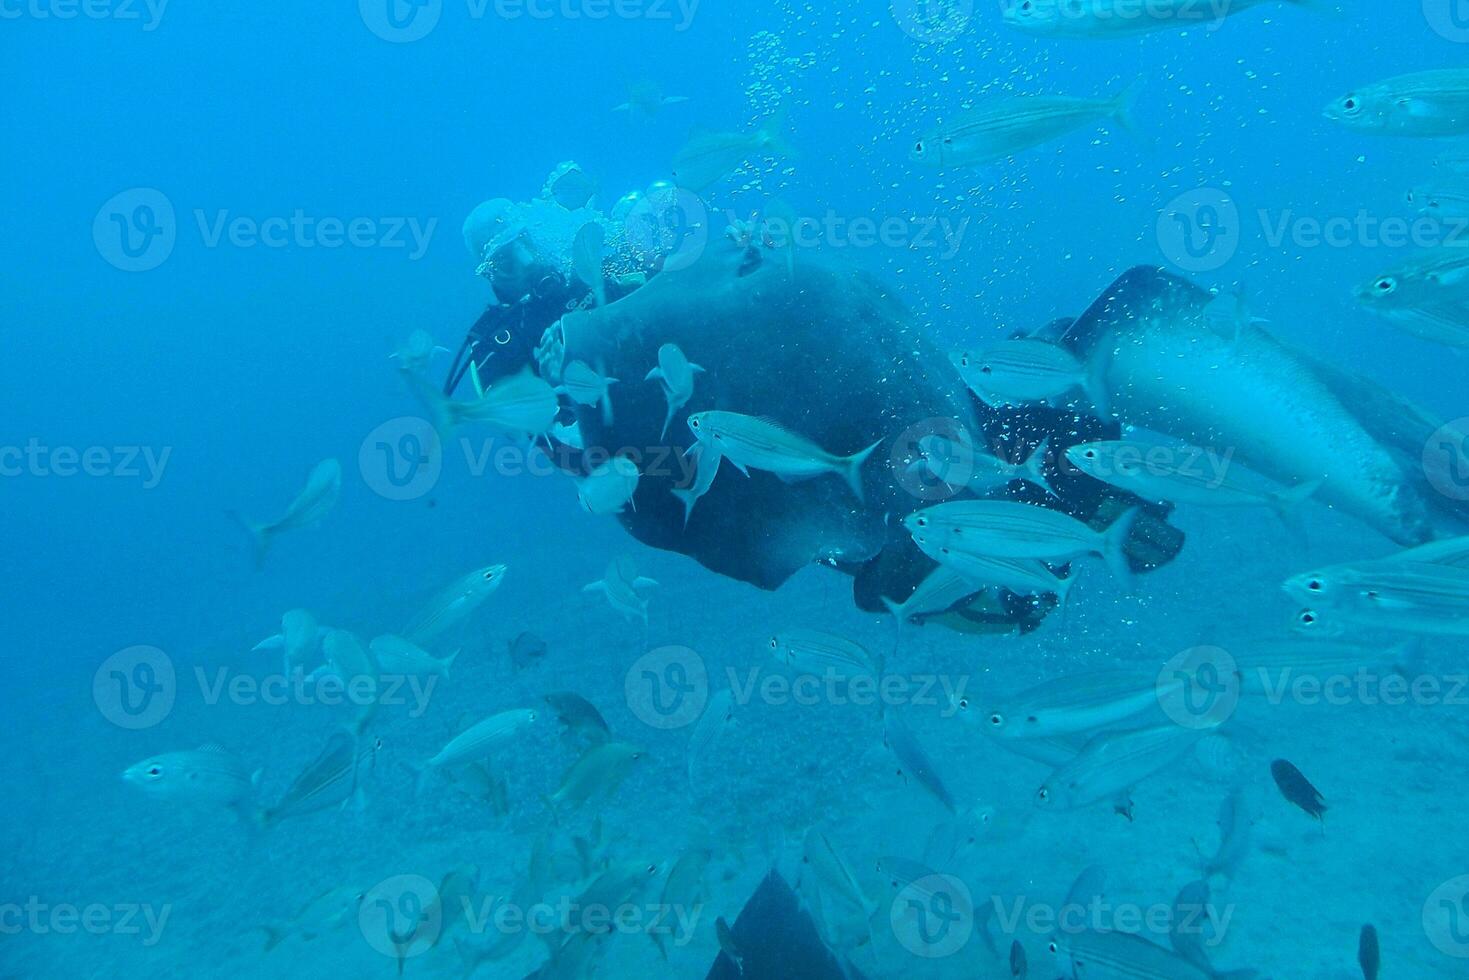 tranquilo calma submarino mundo con pescado vivo en el atlántico Oceano foto